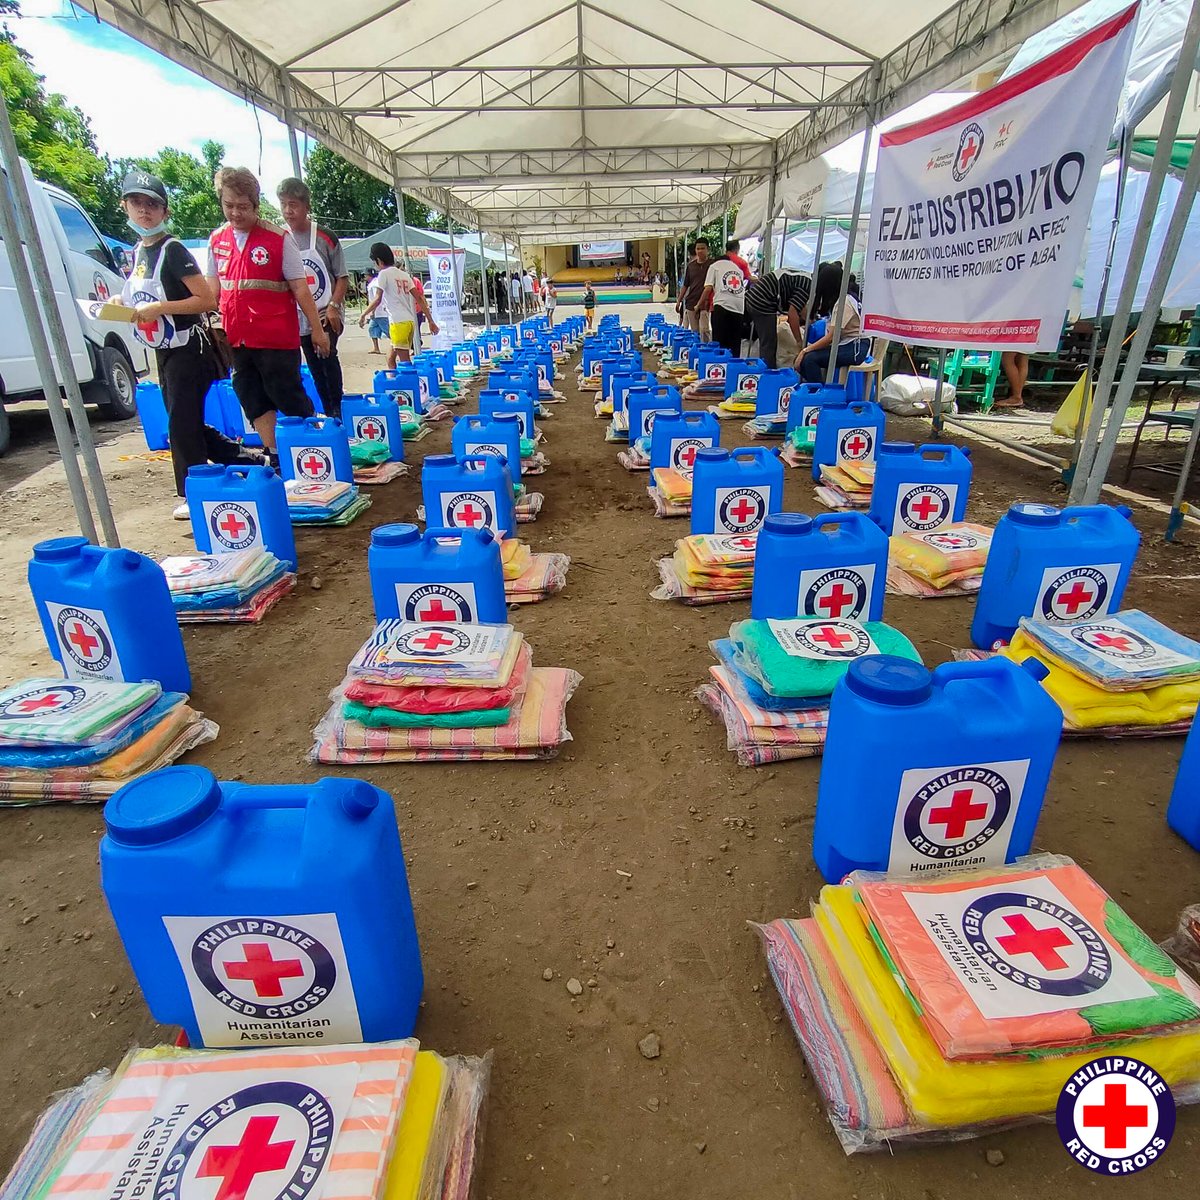 philredcross tweet picture